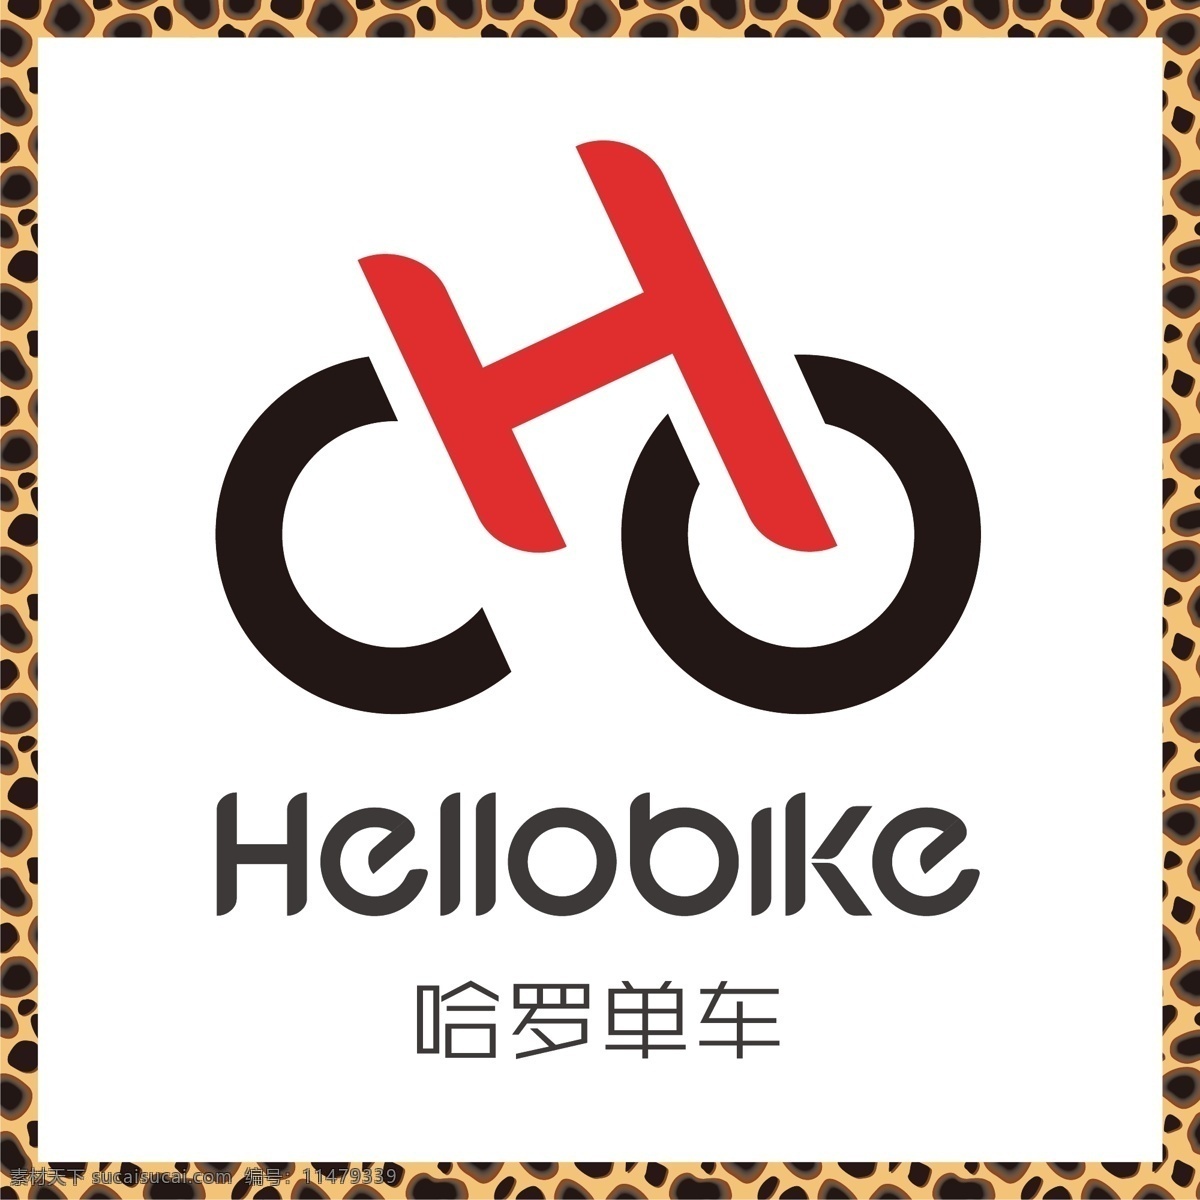 哈罗单车 共享单车 自行车 绿色出行 共享经济 logo 标志 矢量 vi logo设计